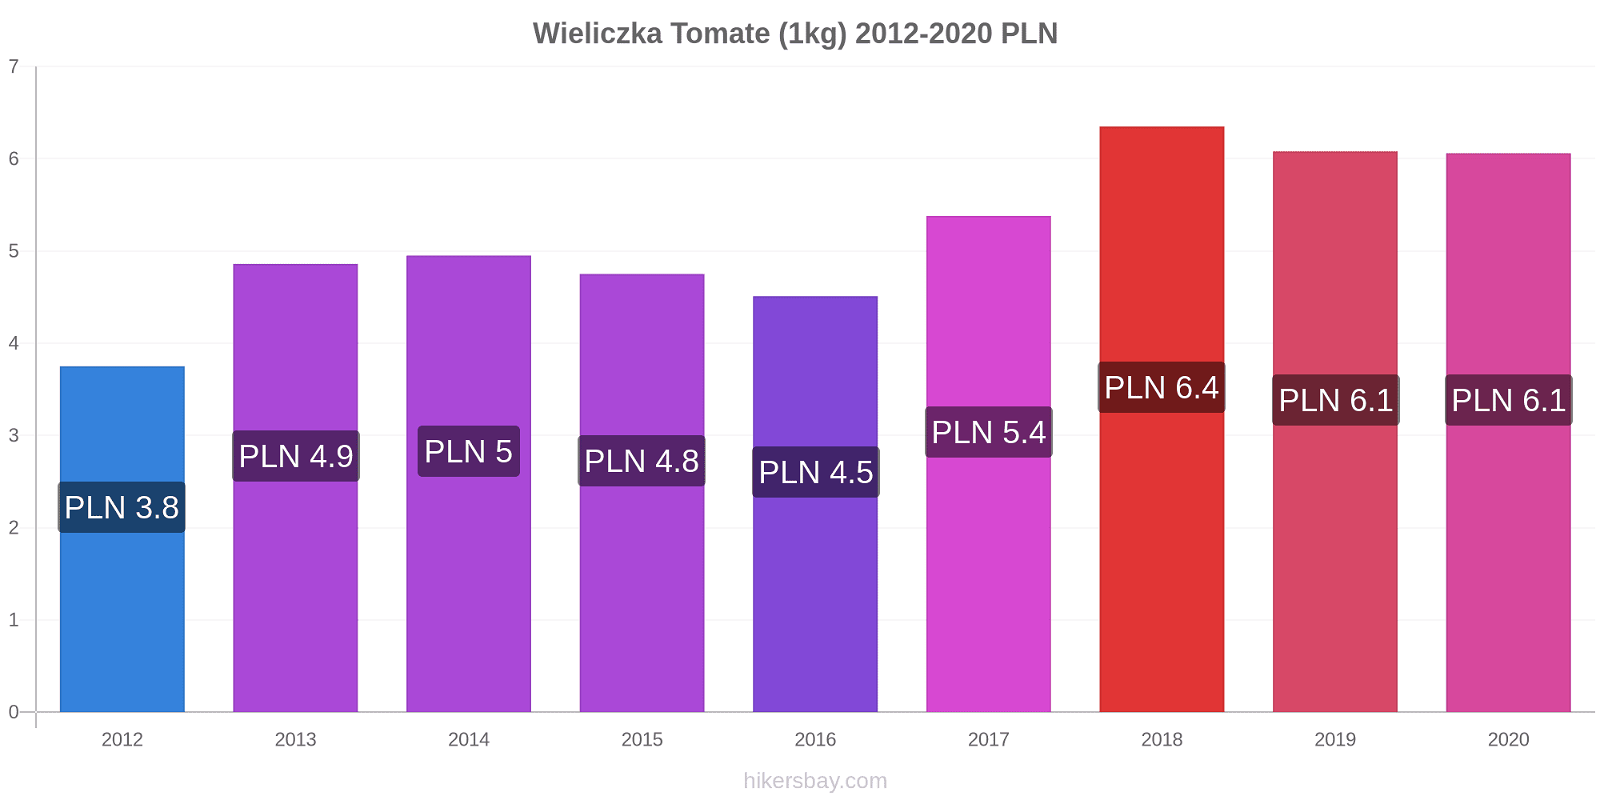 Wieliczka variação de preço Tomate (1kg) hikersbay.com